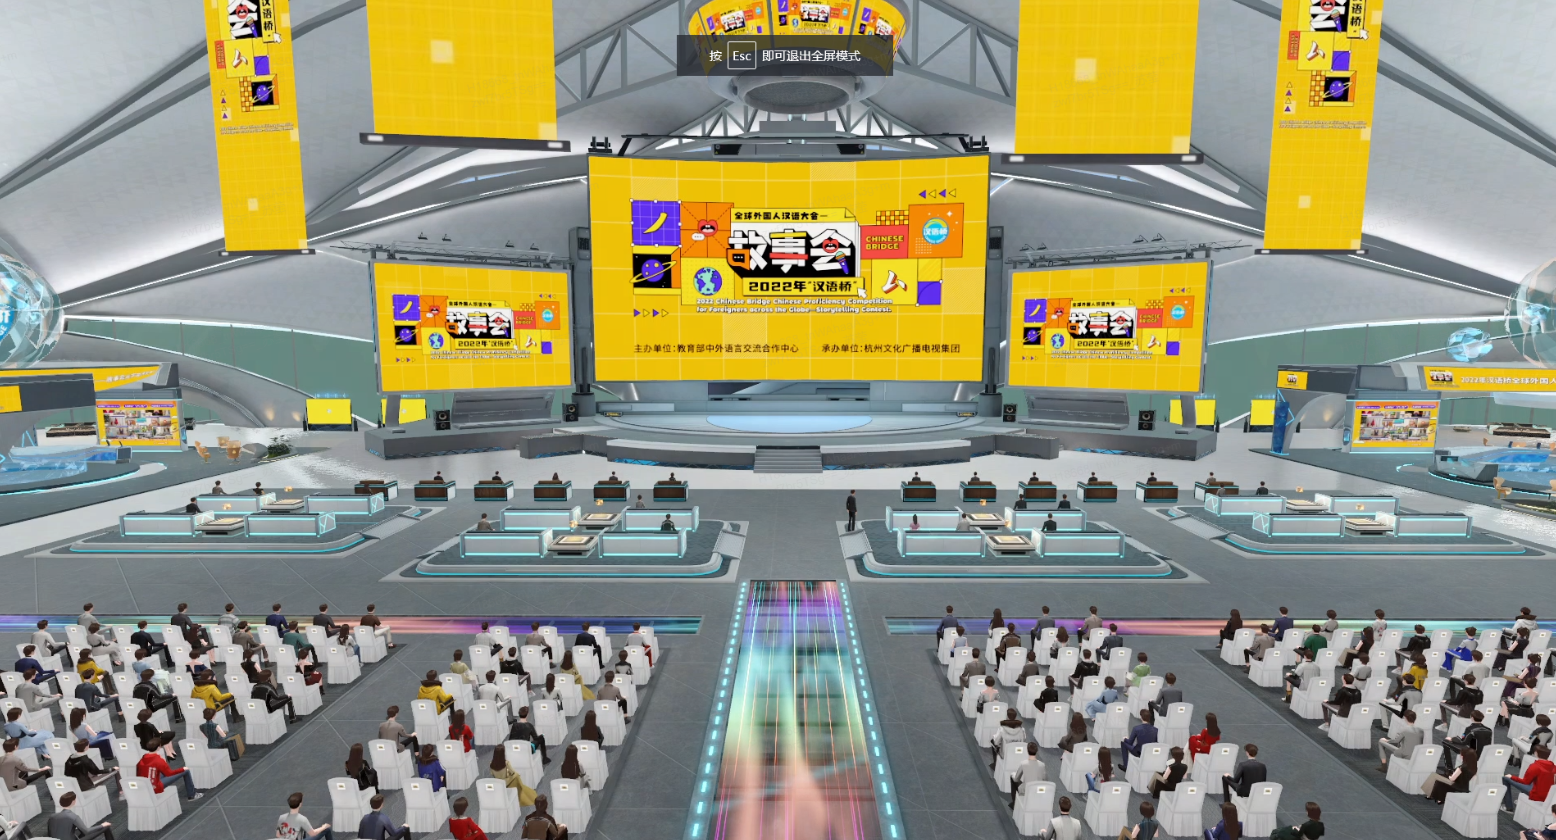 这是一张展现现代电子竞技赛事场馆的图片，观众席上坐满了人，中间有比赛舞台，大屏幕展示赛事信息。